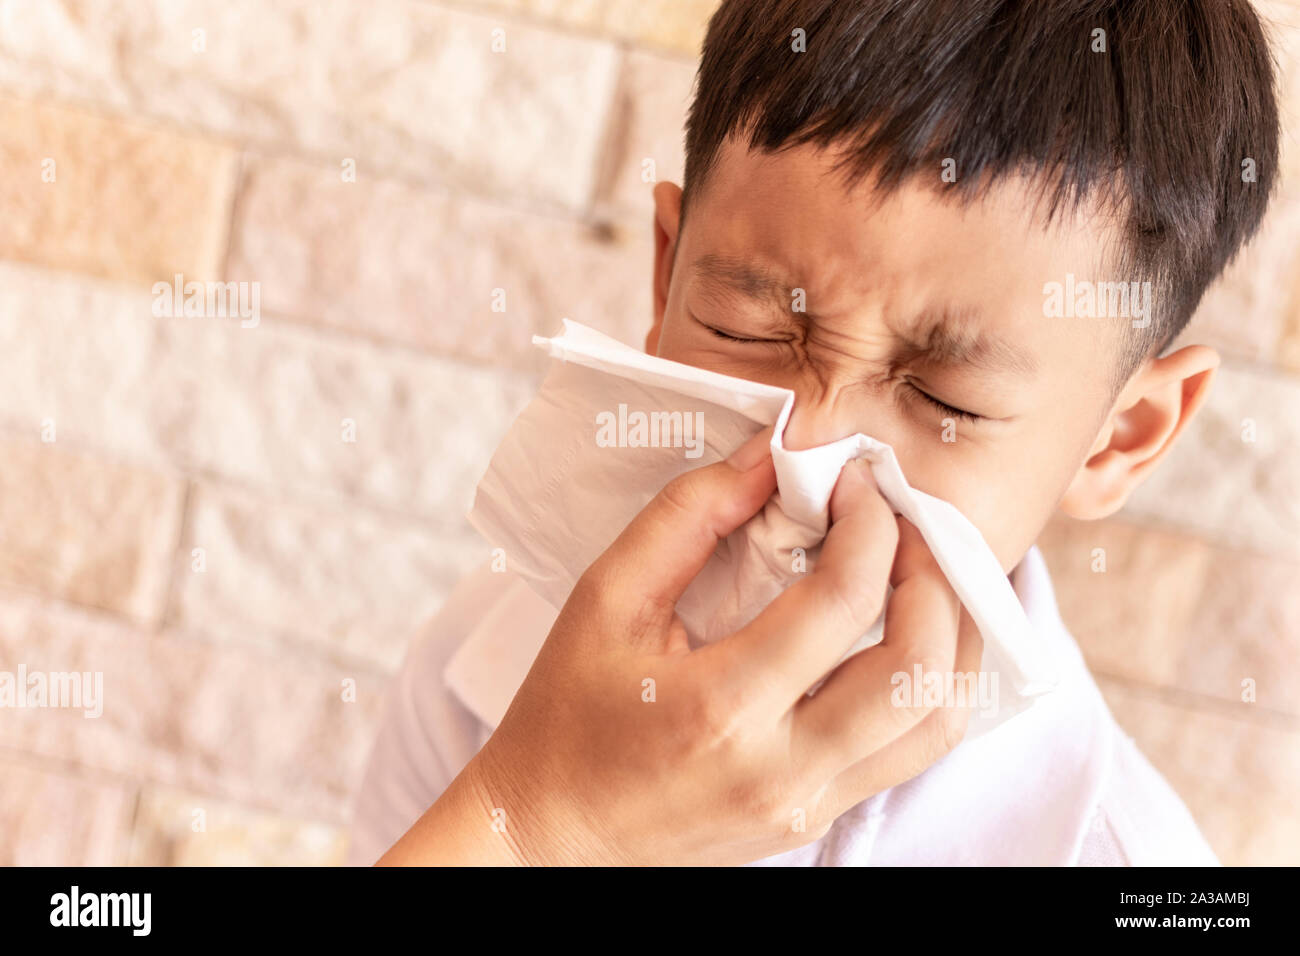 Eltern helfen, einem Kind die Nase in die Luft zu sprengen. Asiatische little boy blasen Nase mit einem Taschentuch zu Hause Stockfoto